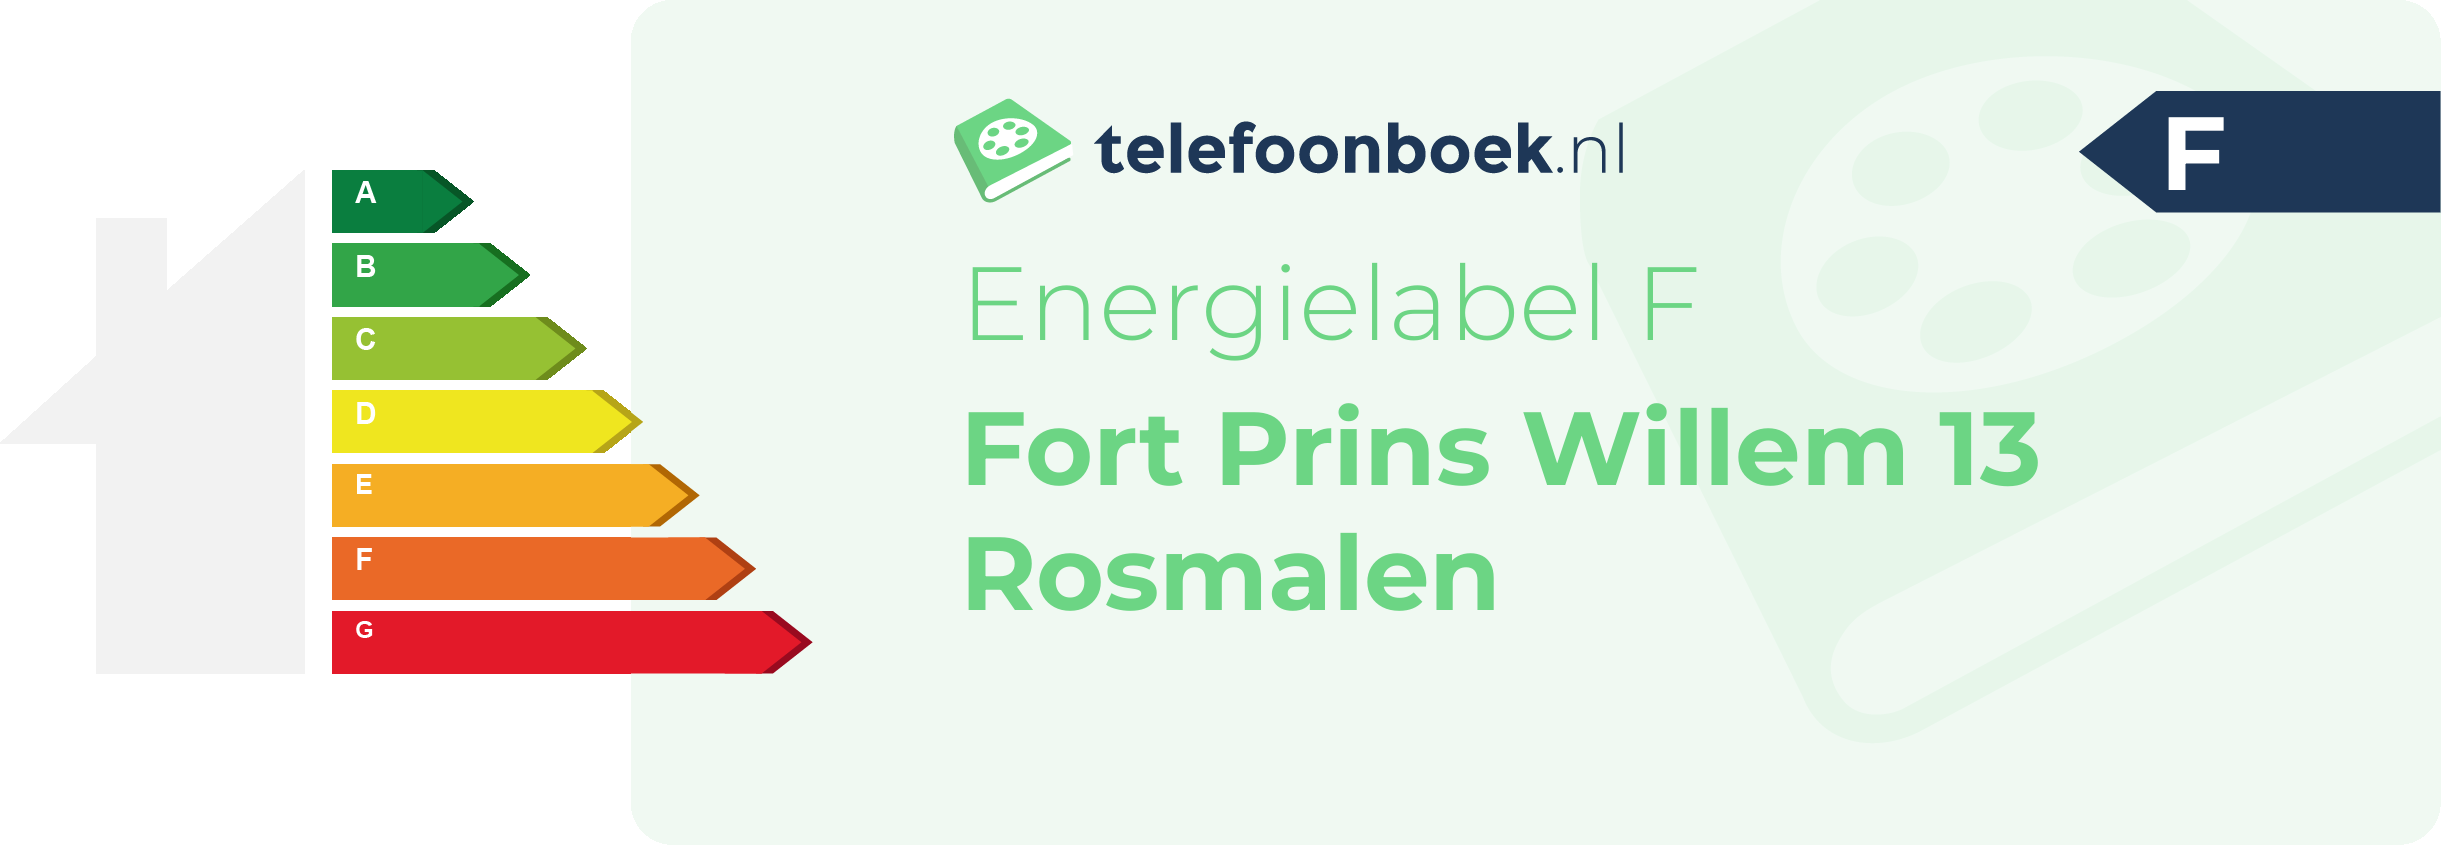 Energielabel Fort Prins Willem 13 Rosmalen